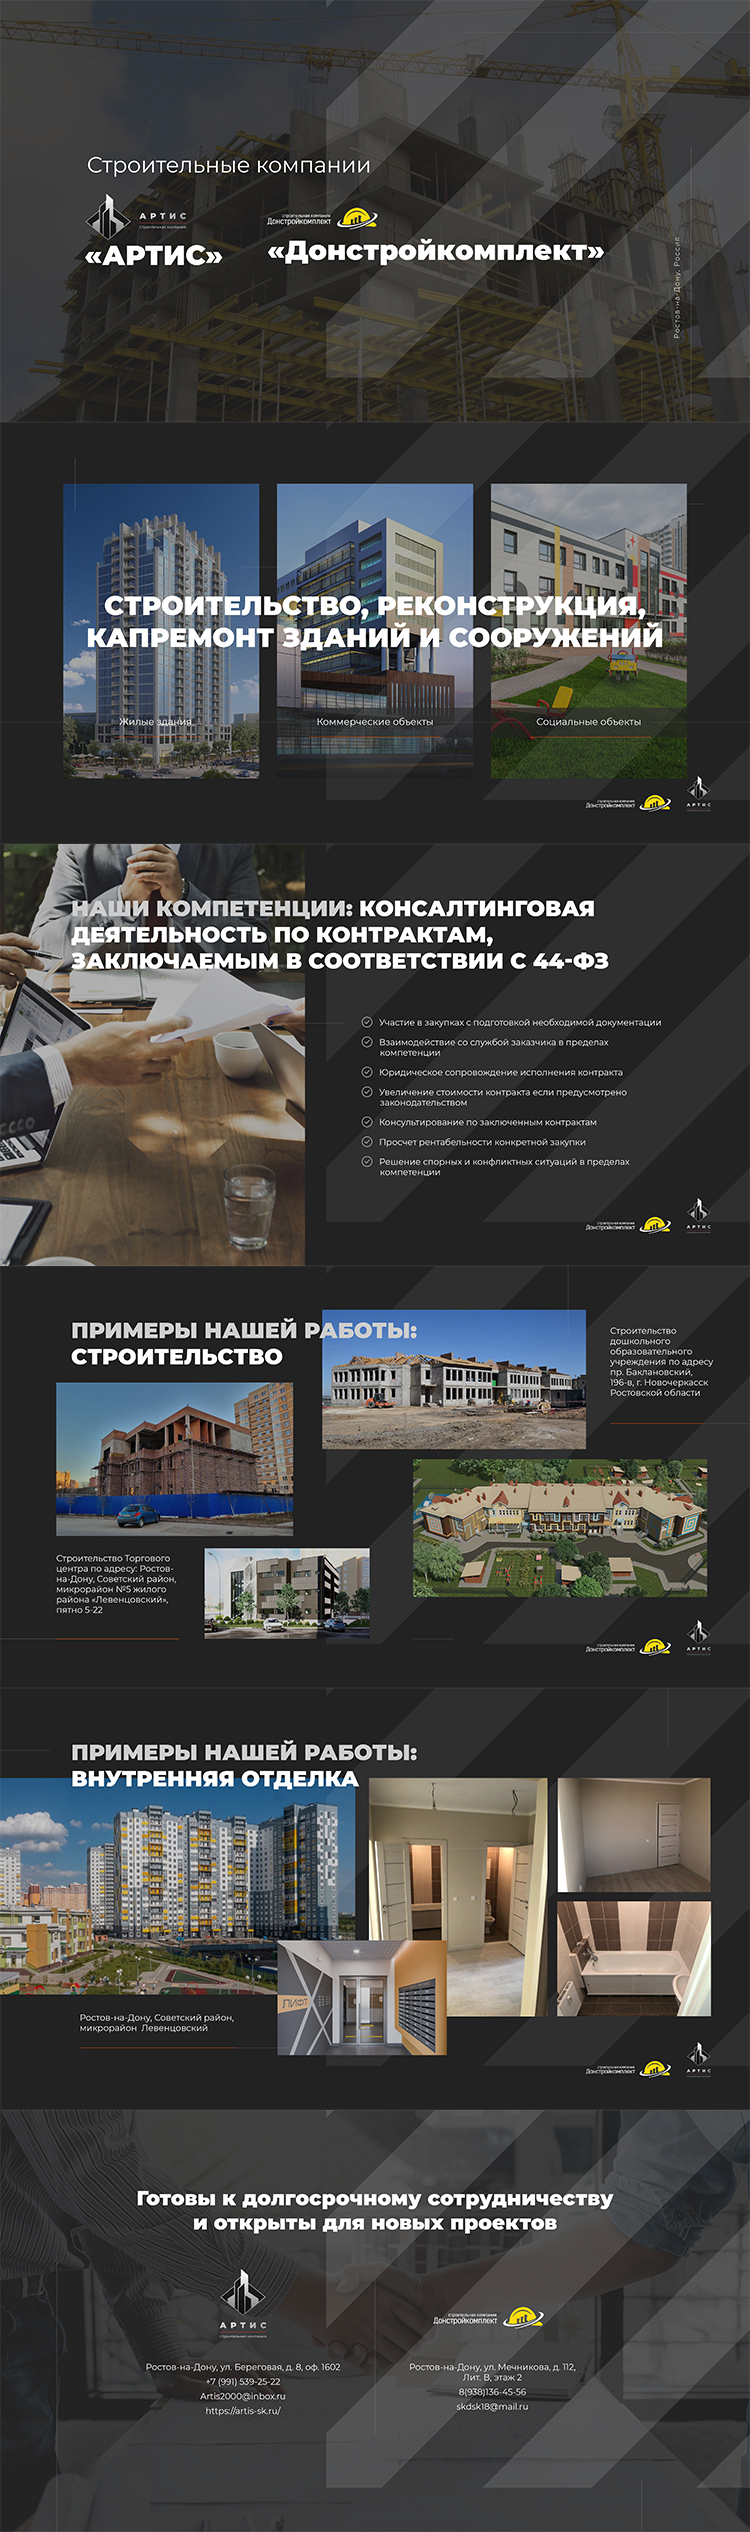 Презентация строительной компании — реконструкция, капитальный ремонт зданий для клиента